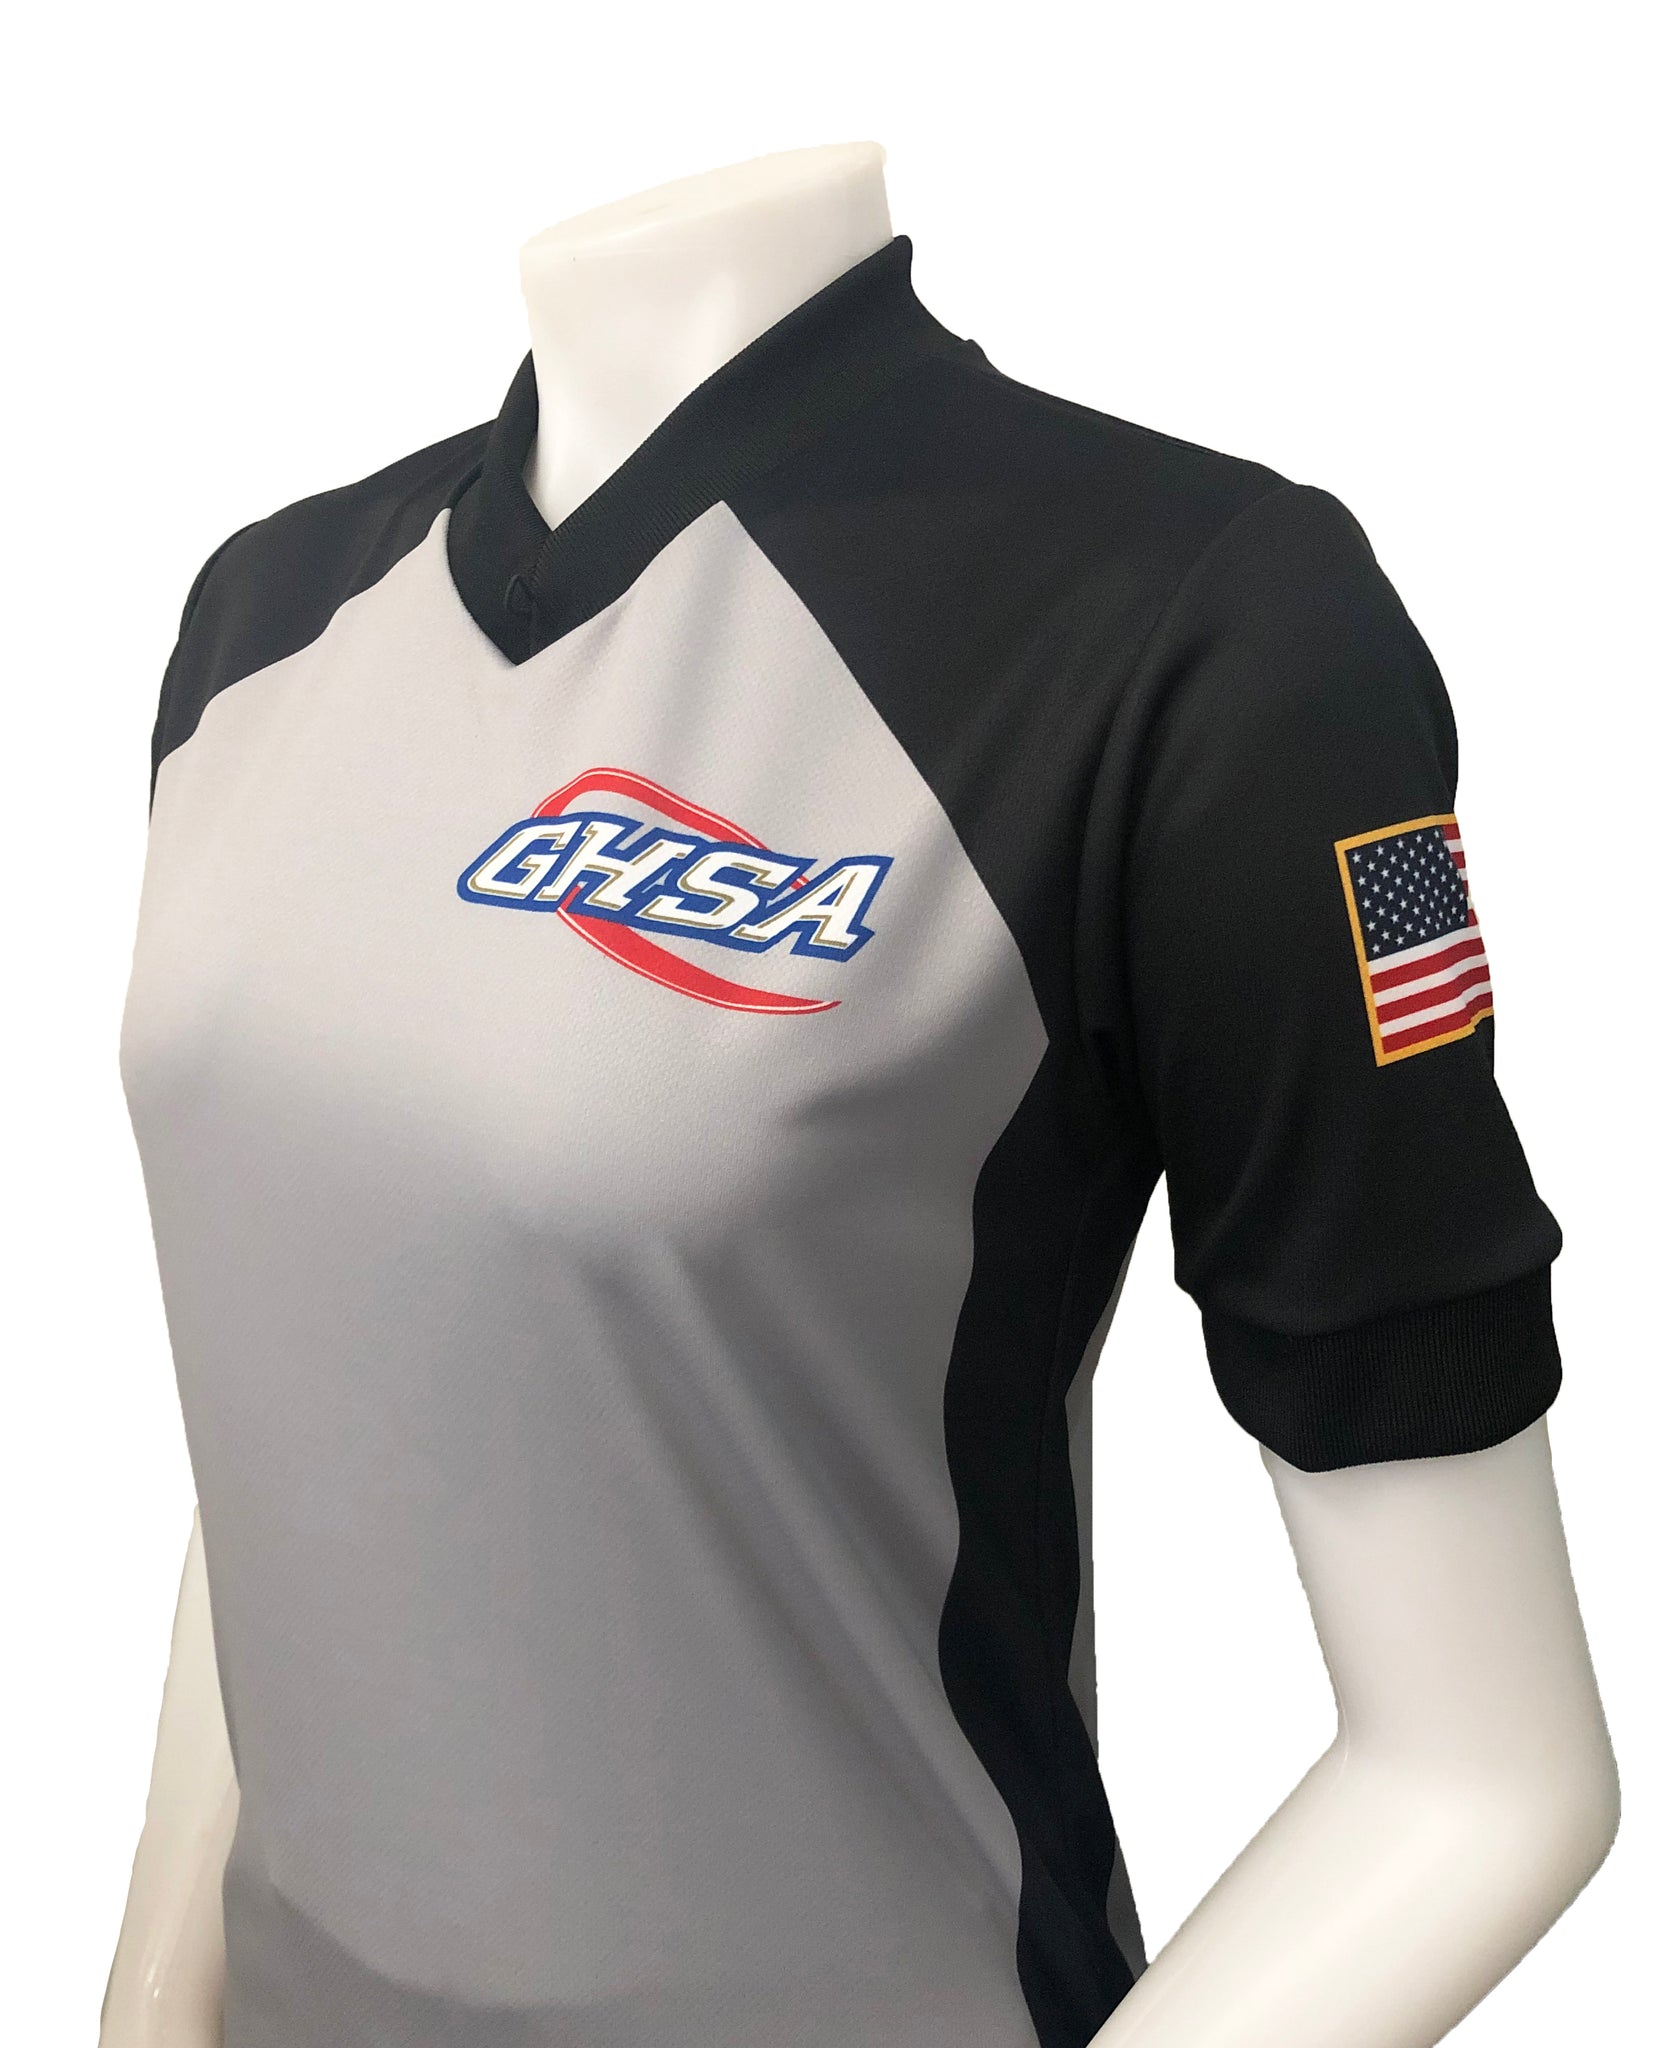 USA217GA - Smitty "Made in USA" - Women's Basketball Short Sleeve Shirt